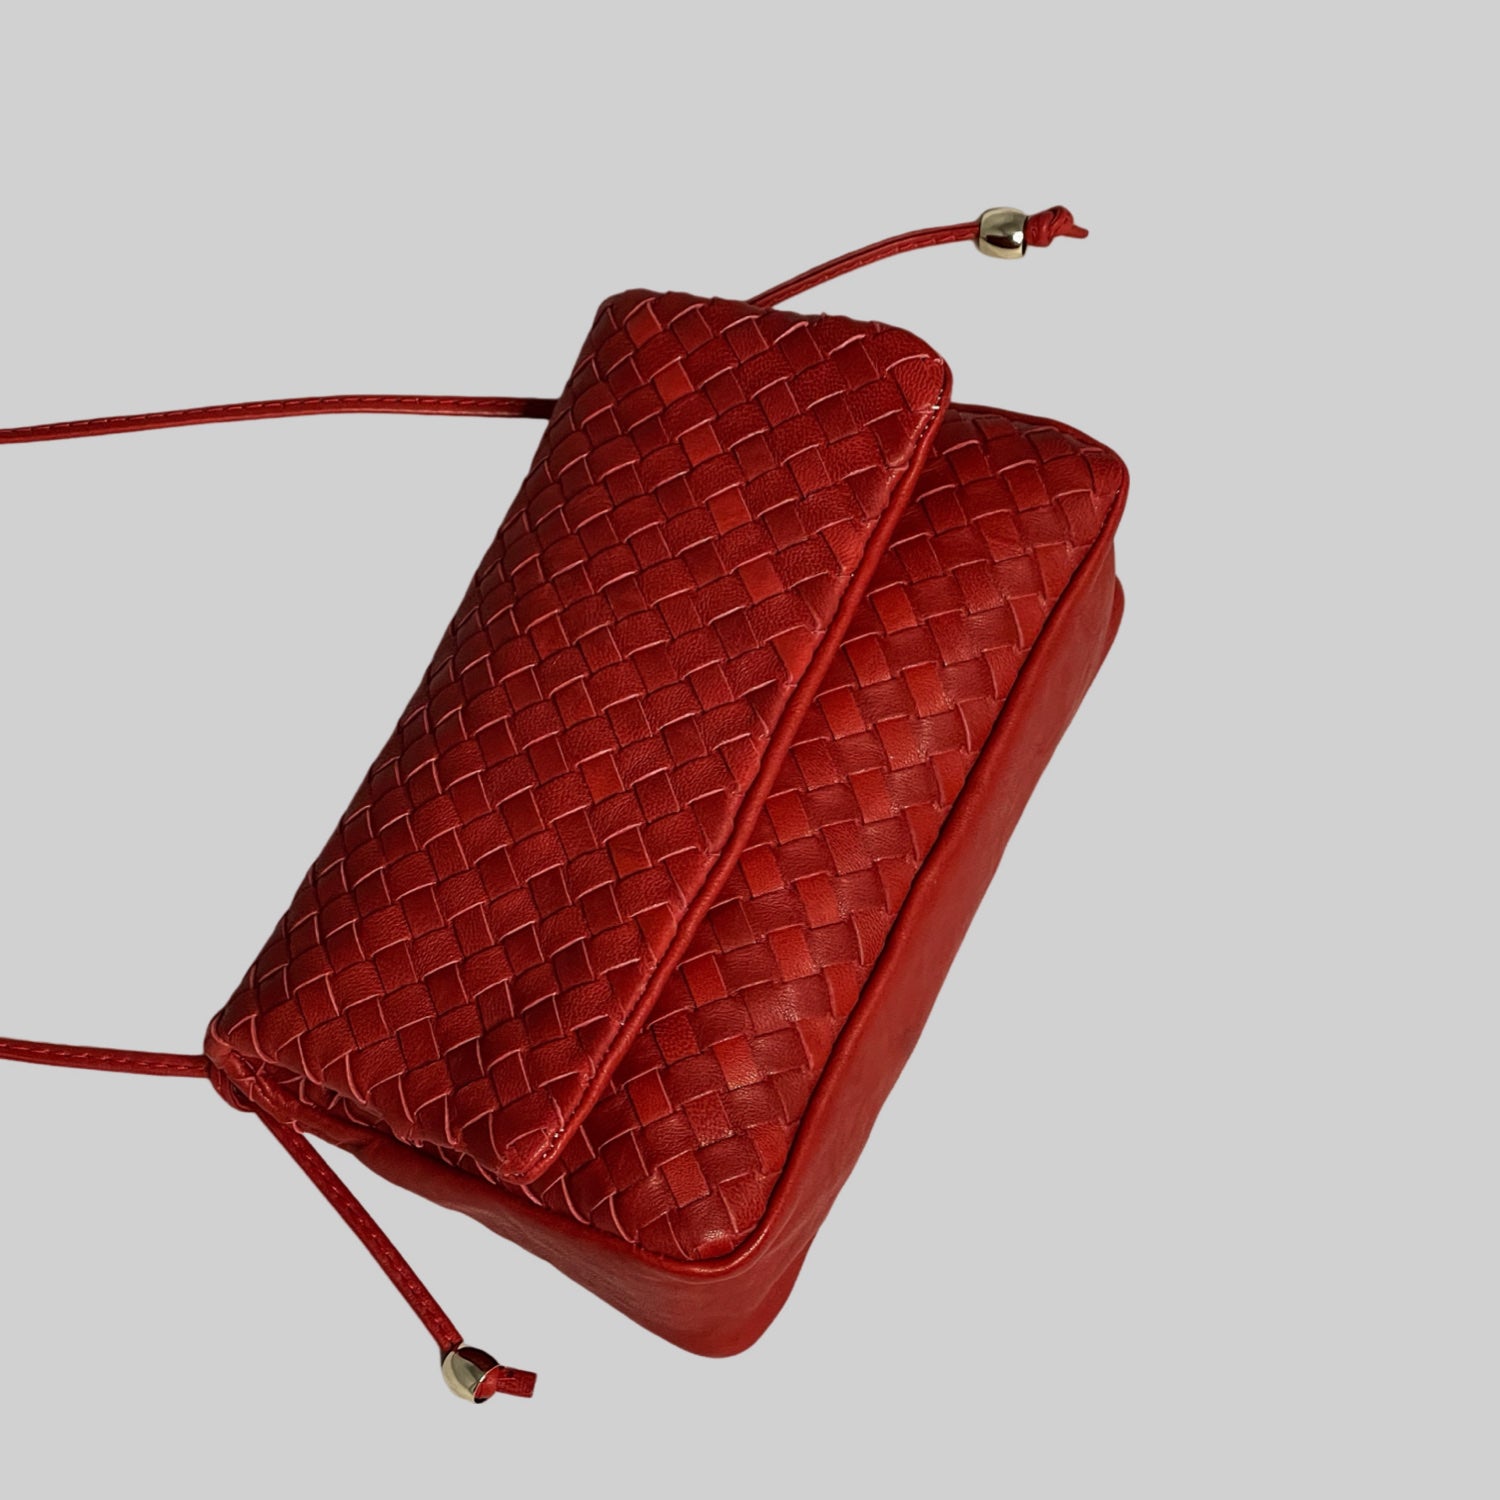 Ribichini Undercover i rødt: Praktisk, elegant flettet skinnveske. Magneter for sikker lukking. Stilige gulldetaljer. Praktisk og elegant.